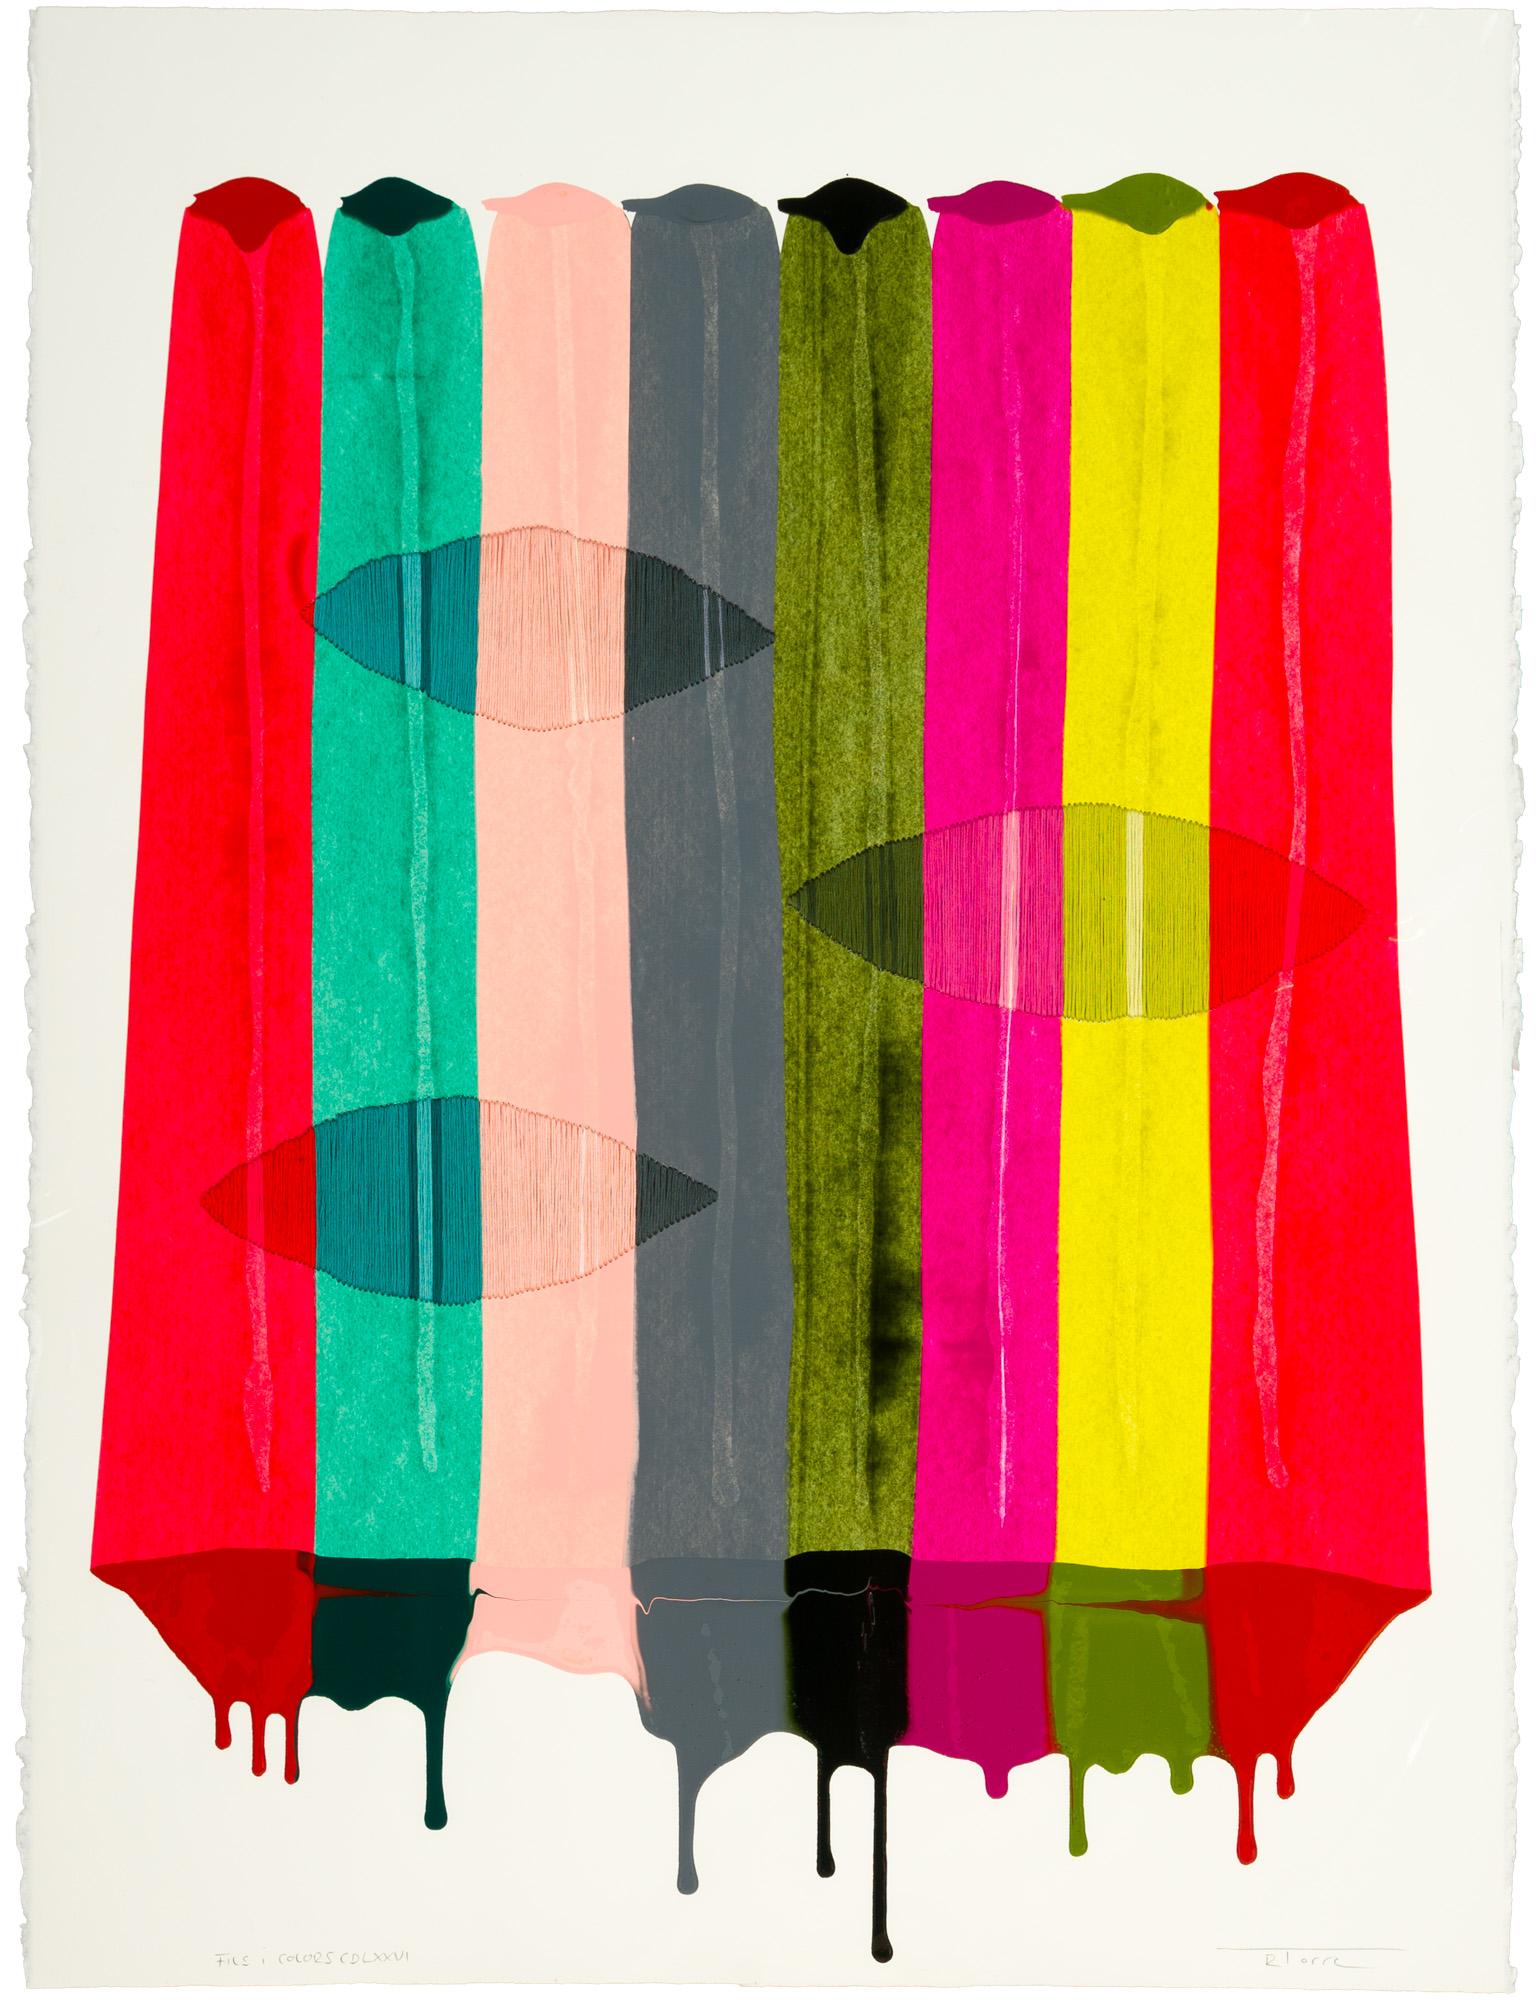 Fils I Colors CDLXXVIII - Abstract Mixed Media Art by Raul de la Torre